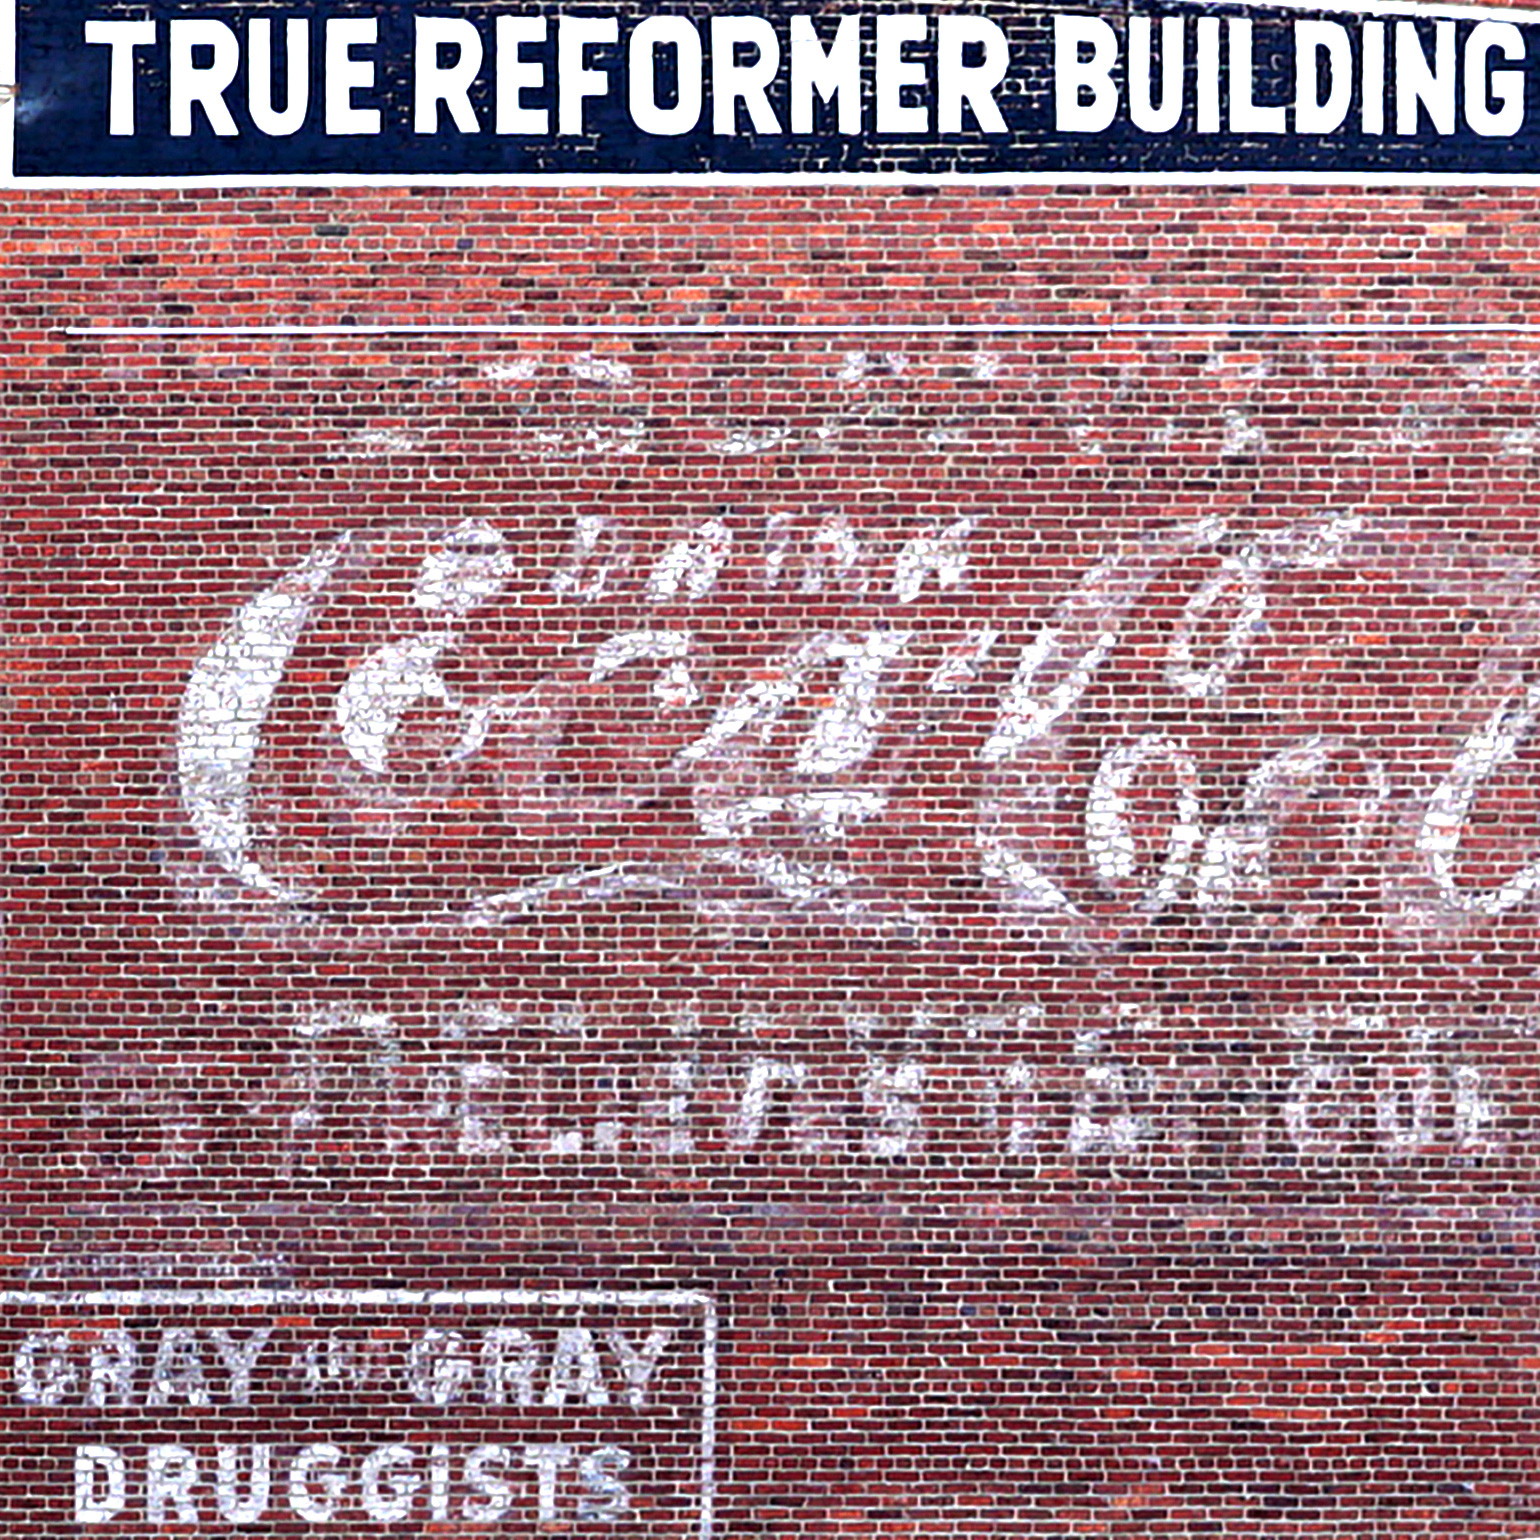 22 – True Reformer Building